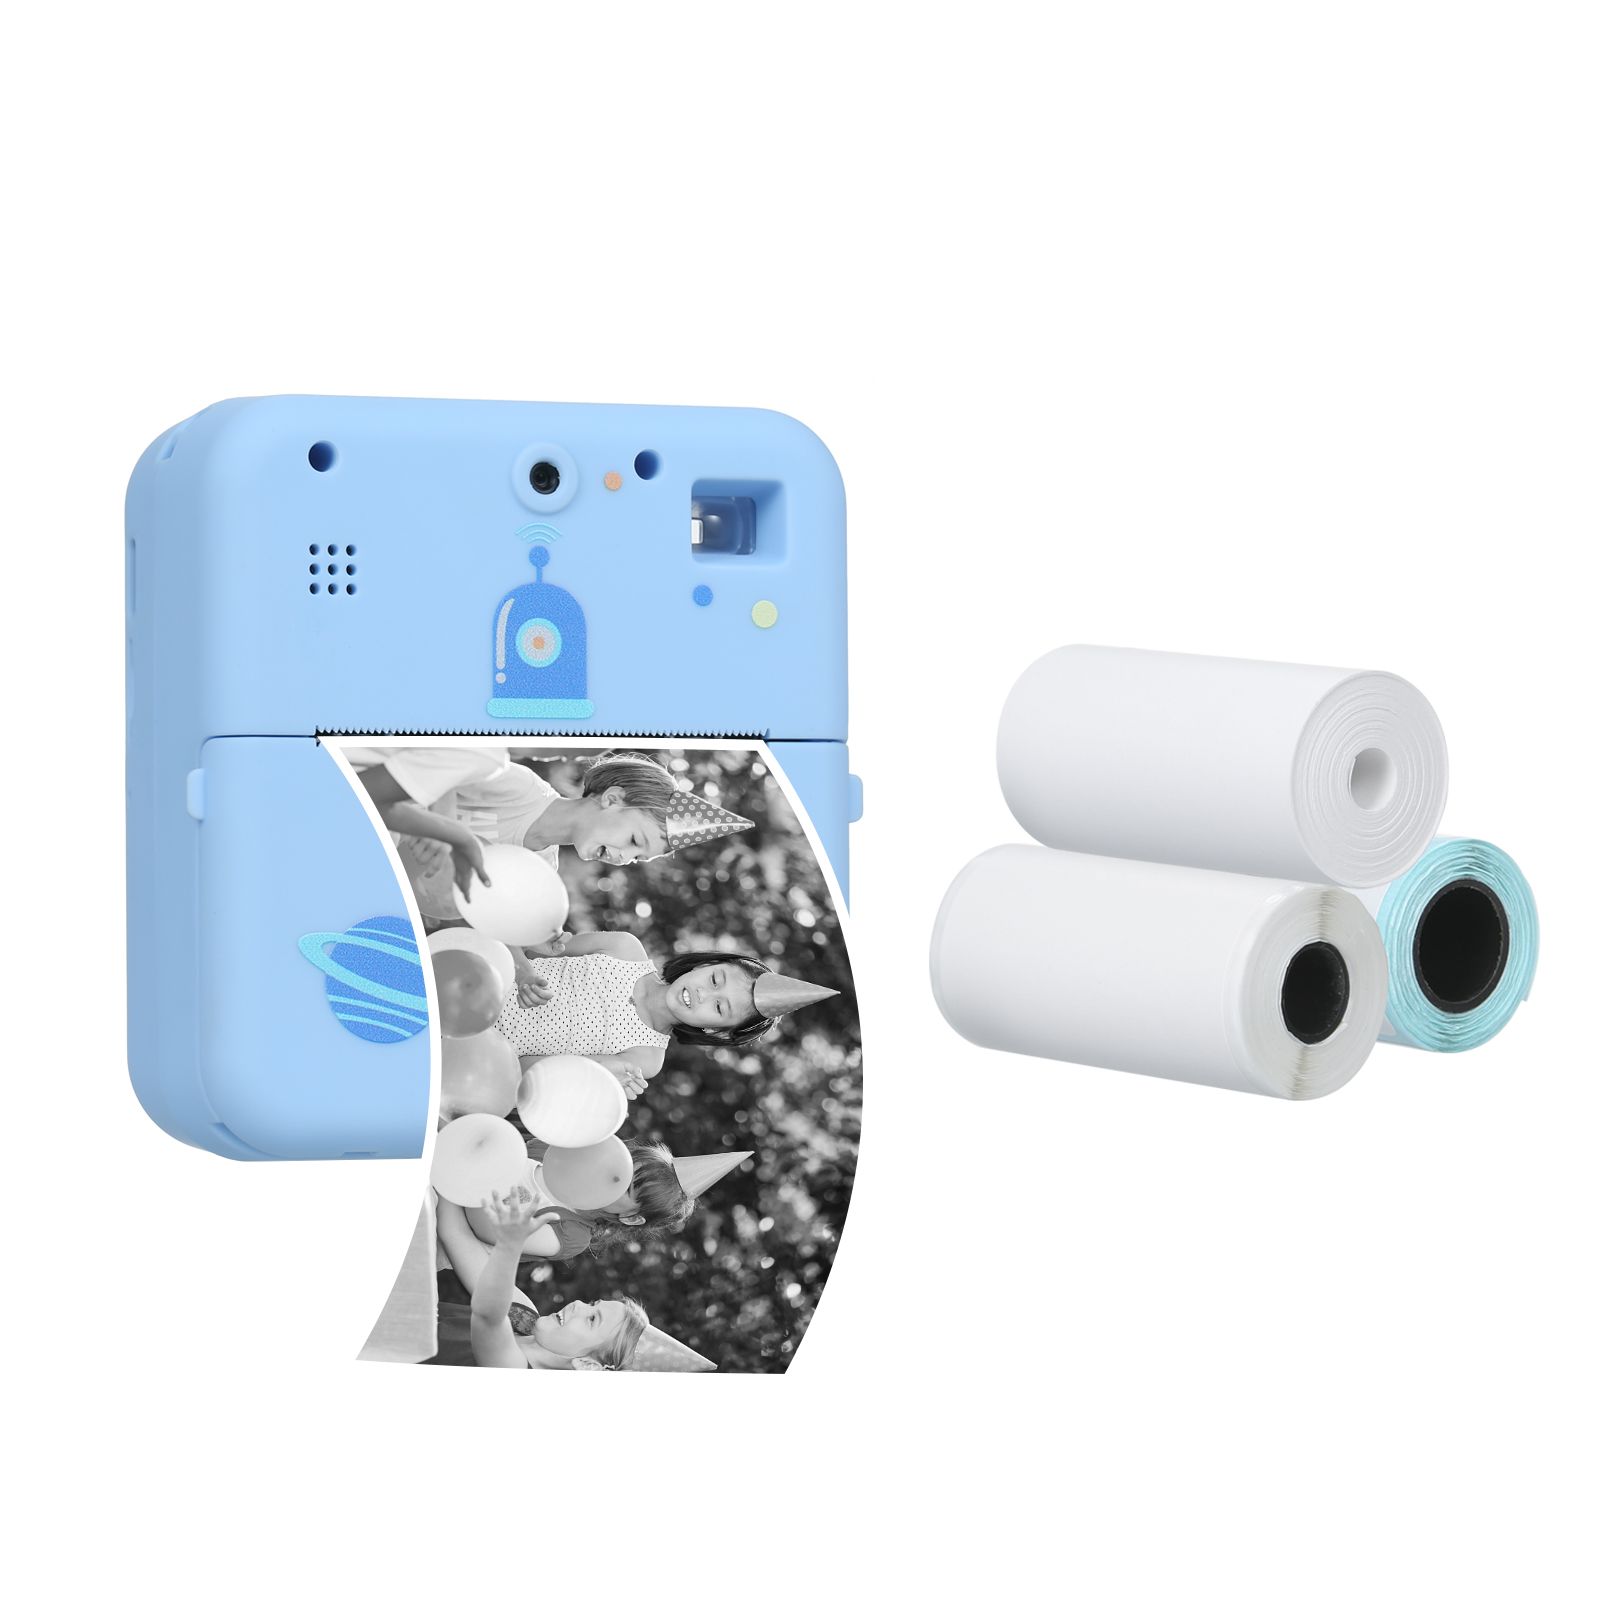 Mini stampante fotografica stampante termica per etichette Wireless 1080P fotocamera per stampa istantanea con carta per stampante a 3 rotoli per promemoria di lavoro della lista di viaggio